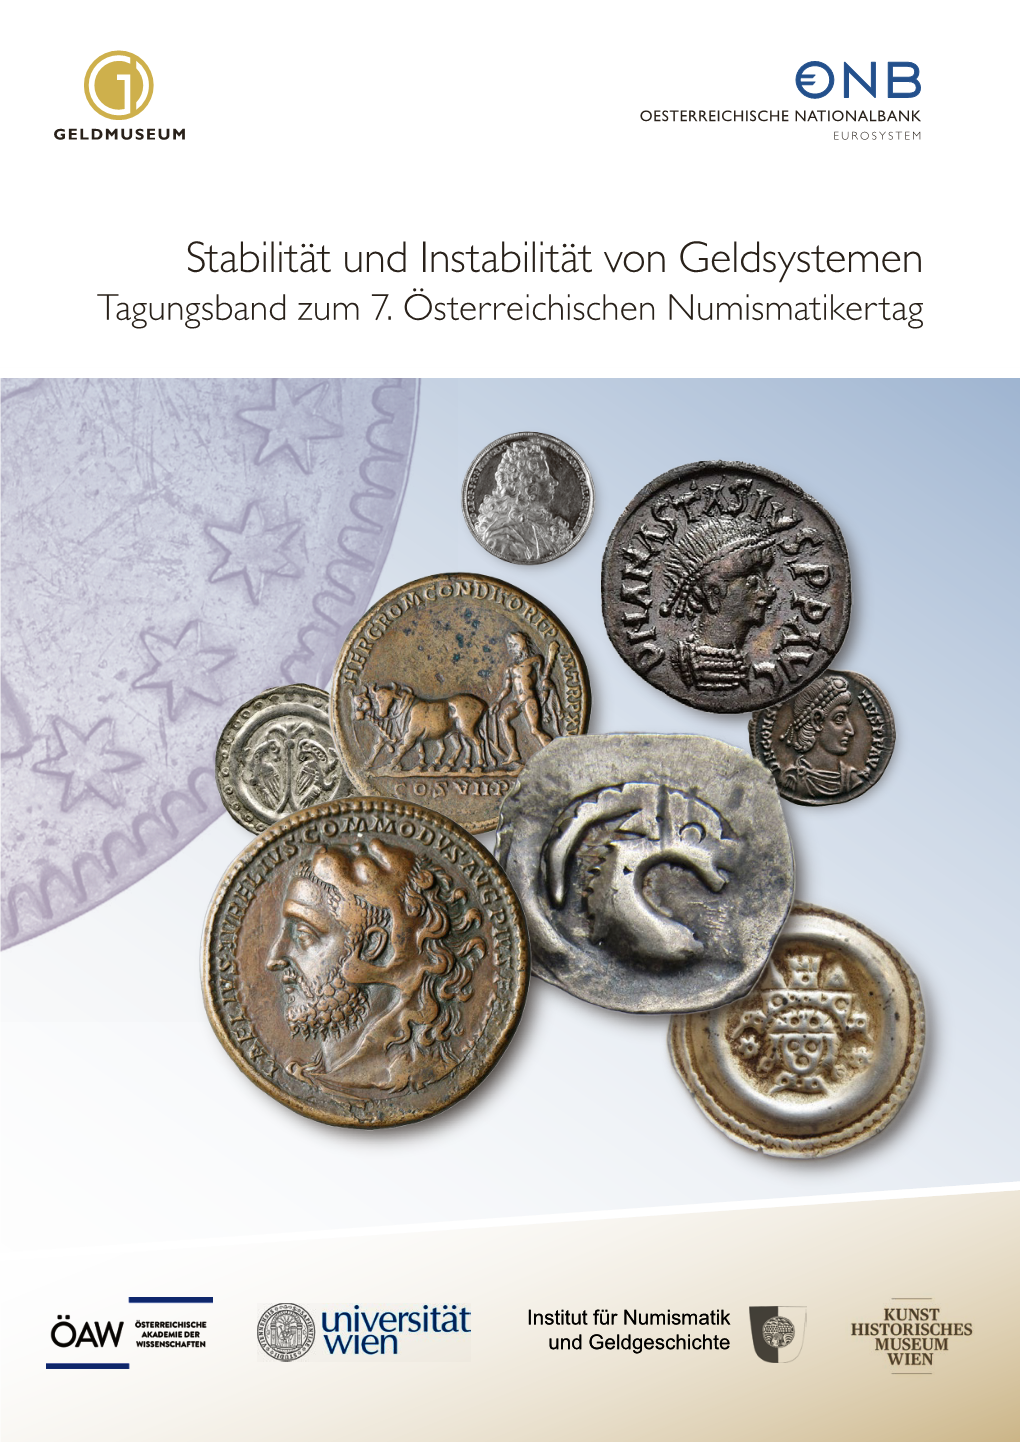 Tagungsband Zum 7. Österreichischen Numismatikertag (Wien, Vom 19